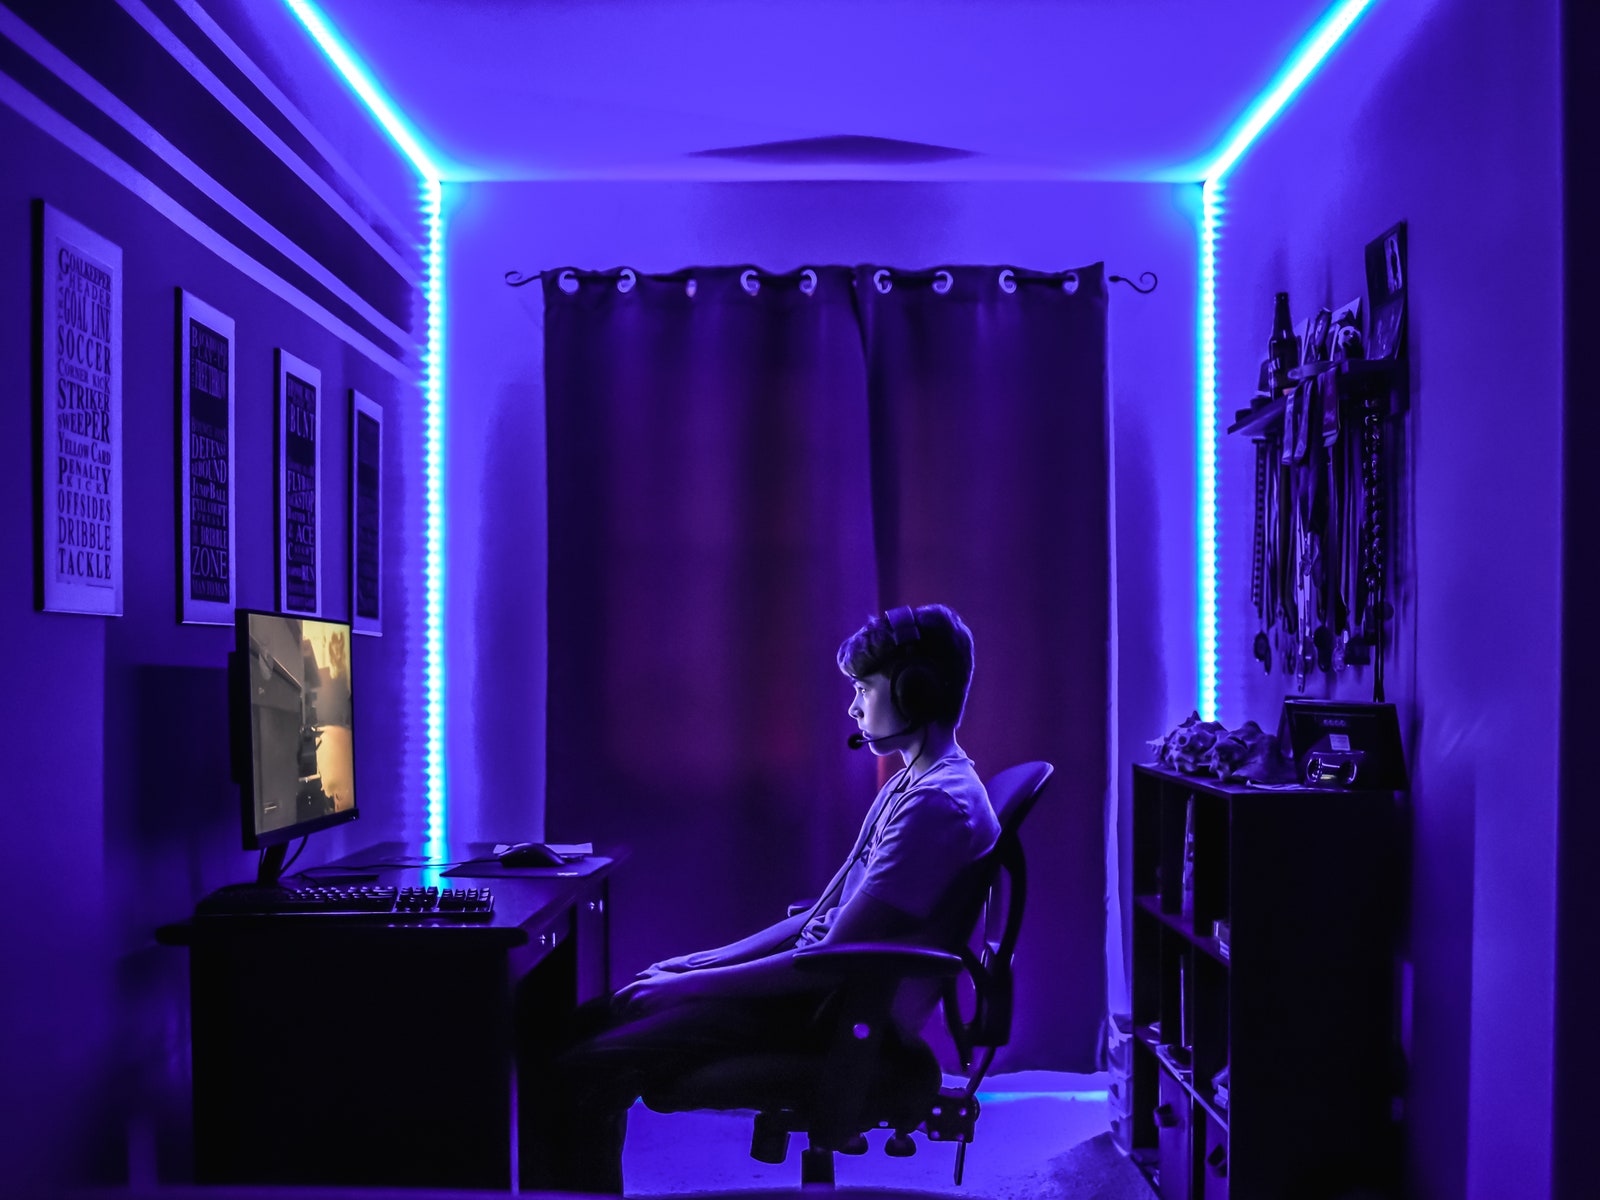 kid sitting at gaming PC